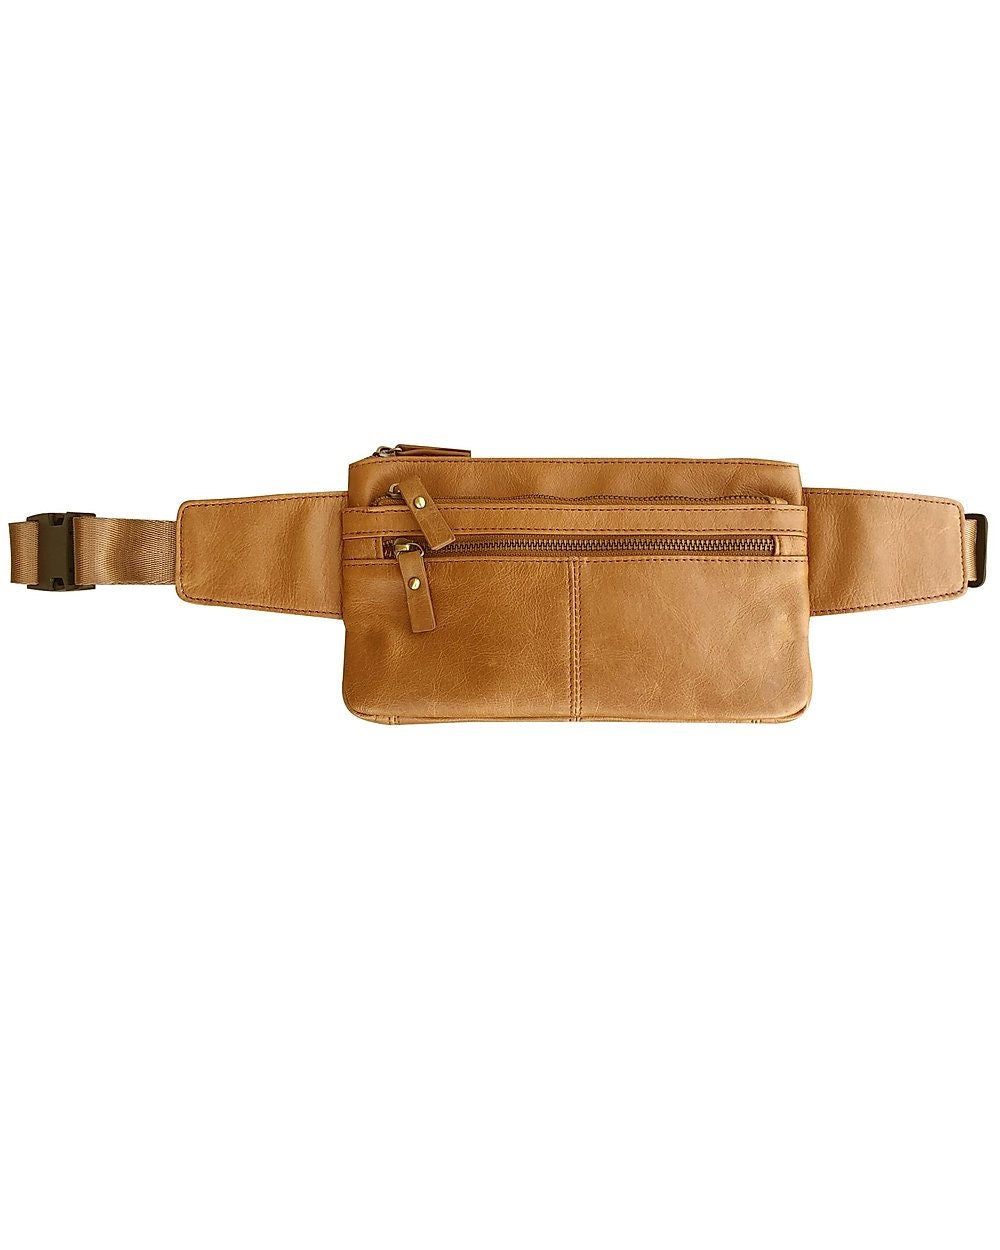 Handcrafted Vintage Leather Fanny Pack Waist Travel Money Belt Sac Bag Tan Black